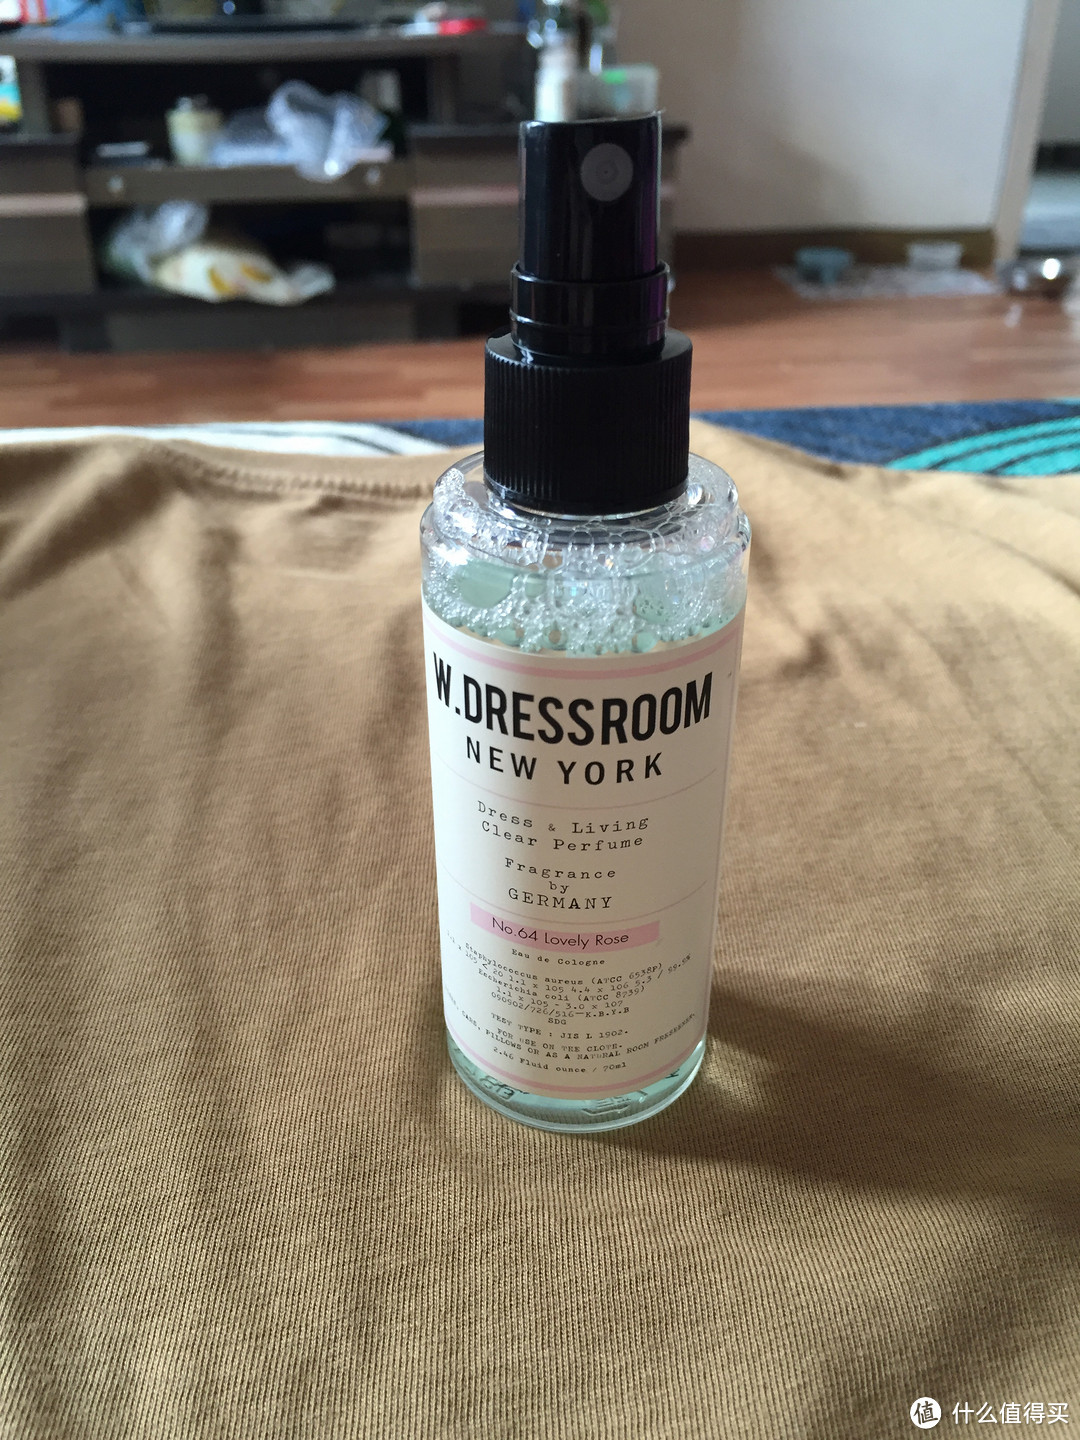 夏天中属于你的味道——W.Dressroom多丽斯香氛喷雾套装使用体验